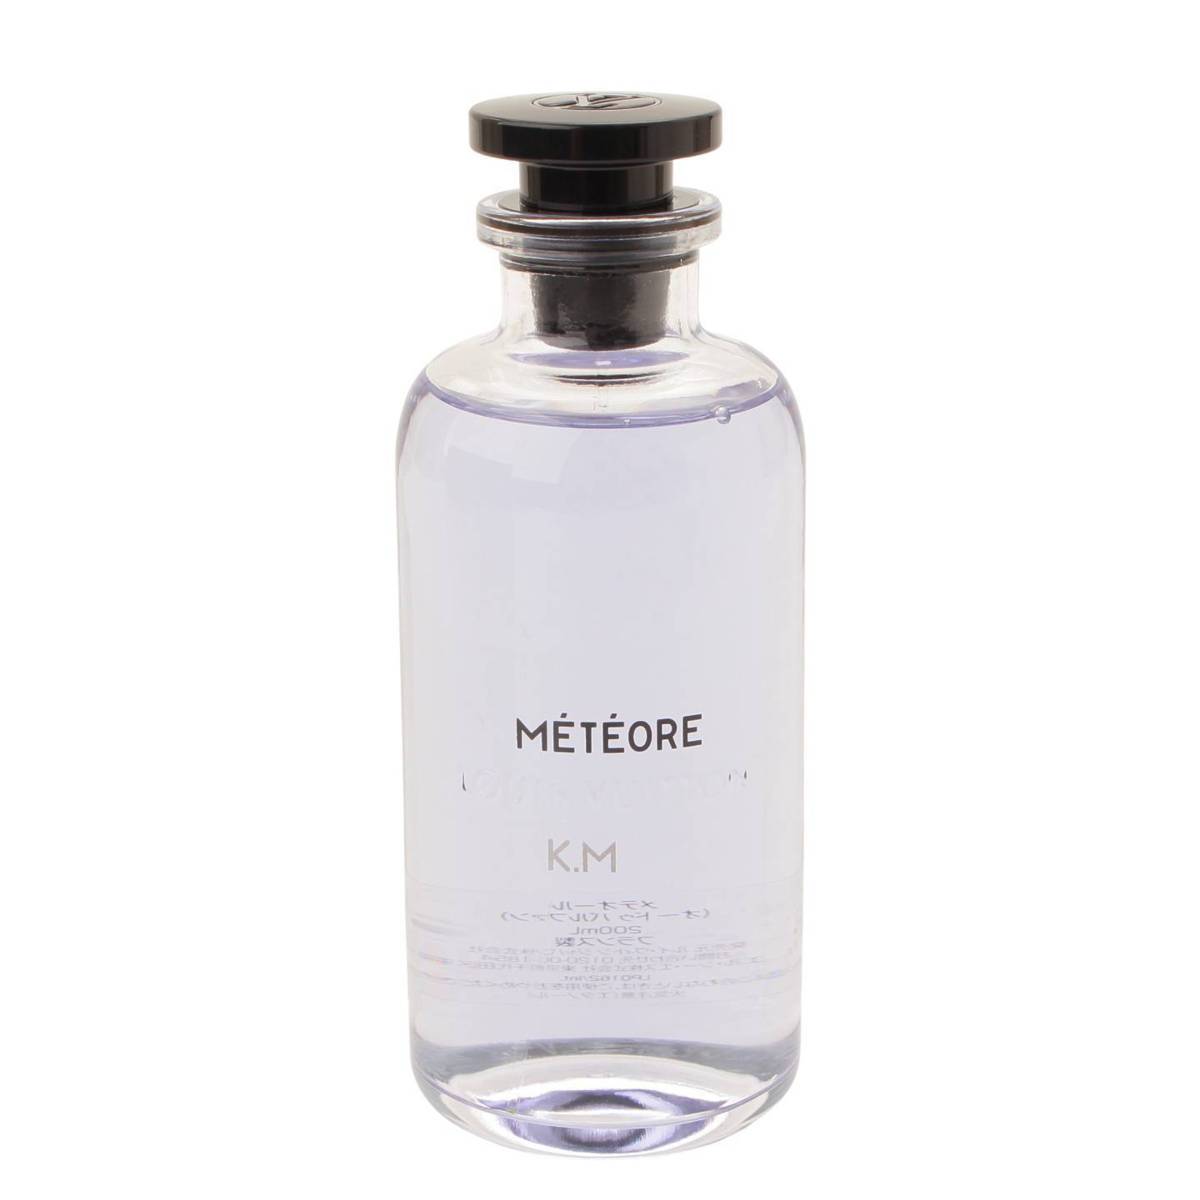 ルイヴィトン(Louis Vuitton) METEORE メテオール オードゥパルファン 香水 フレグランス 200ml